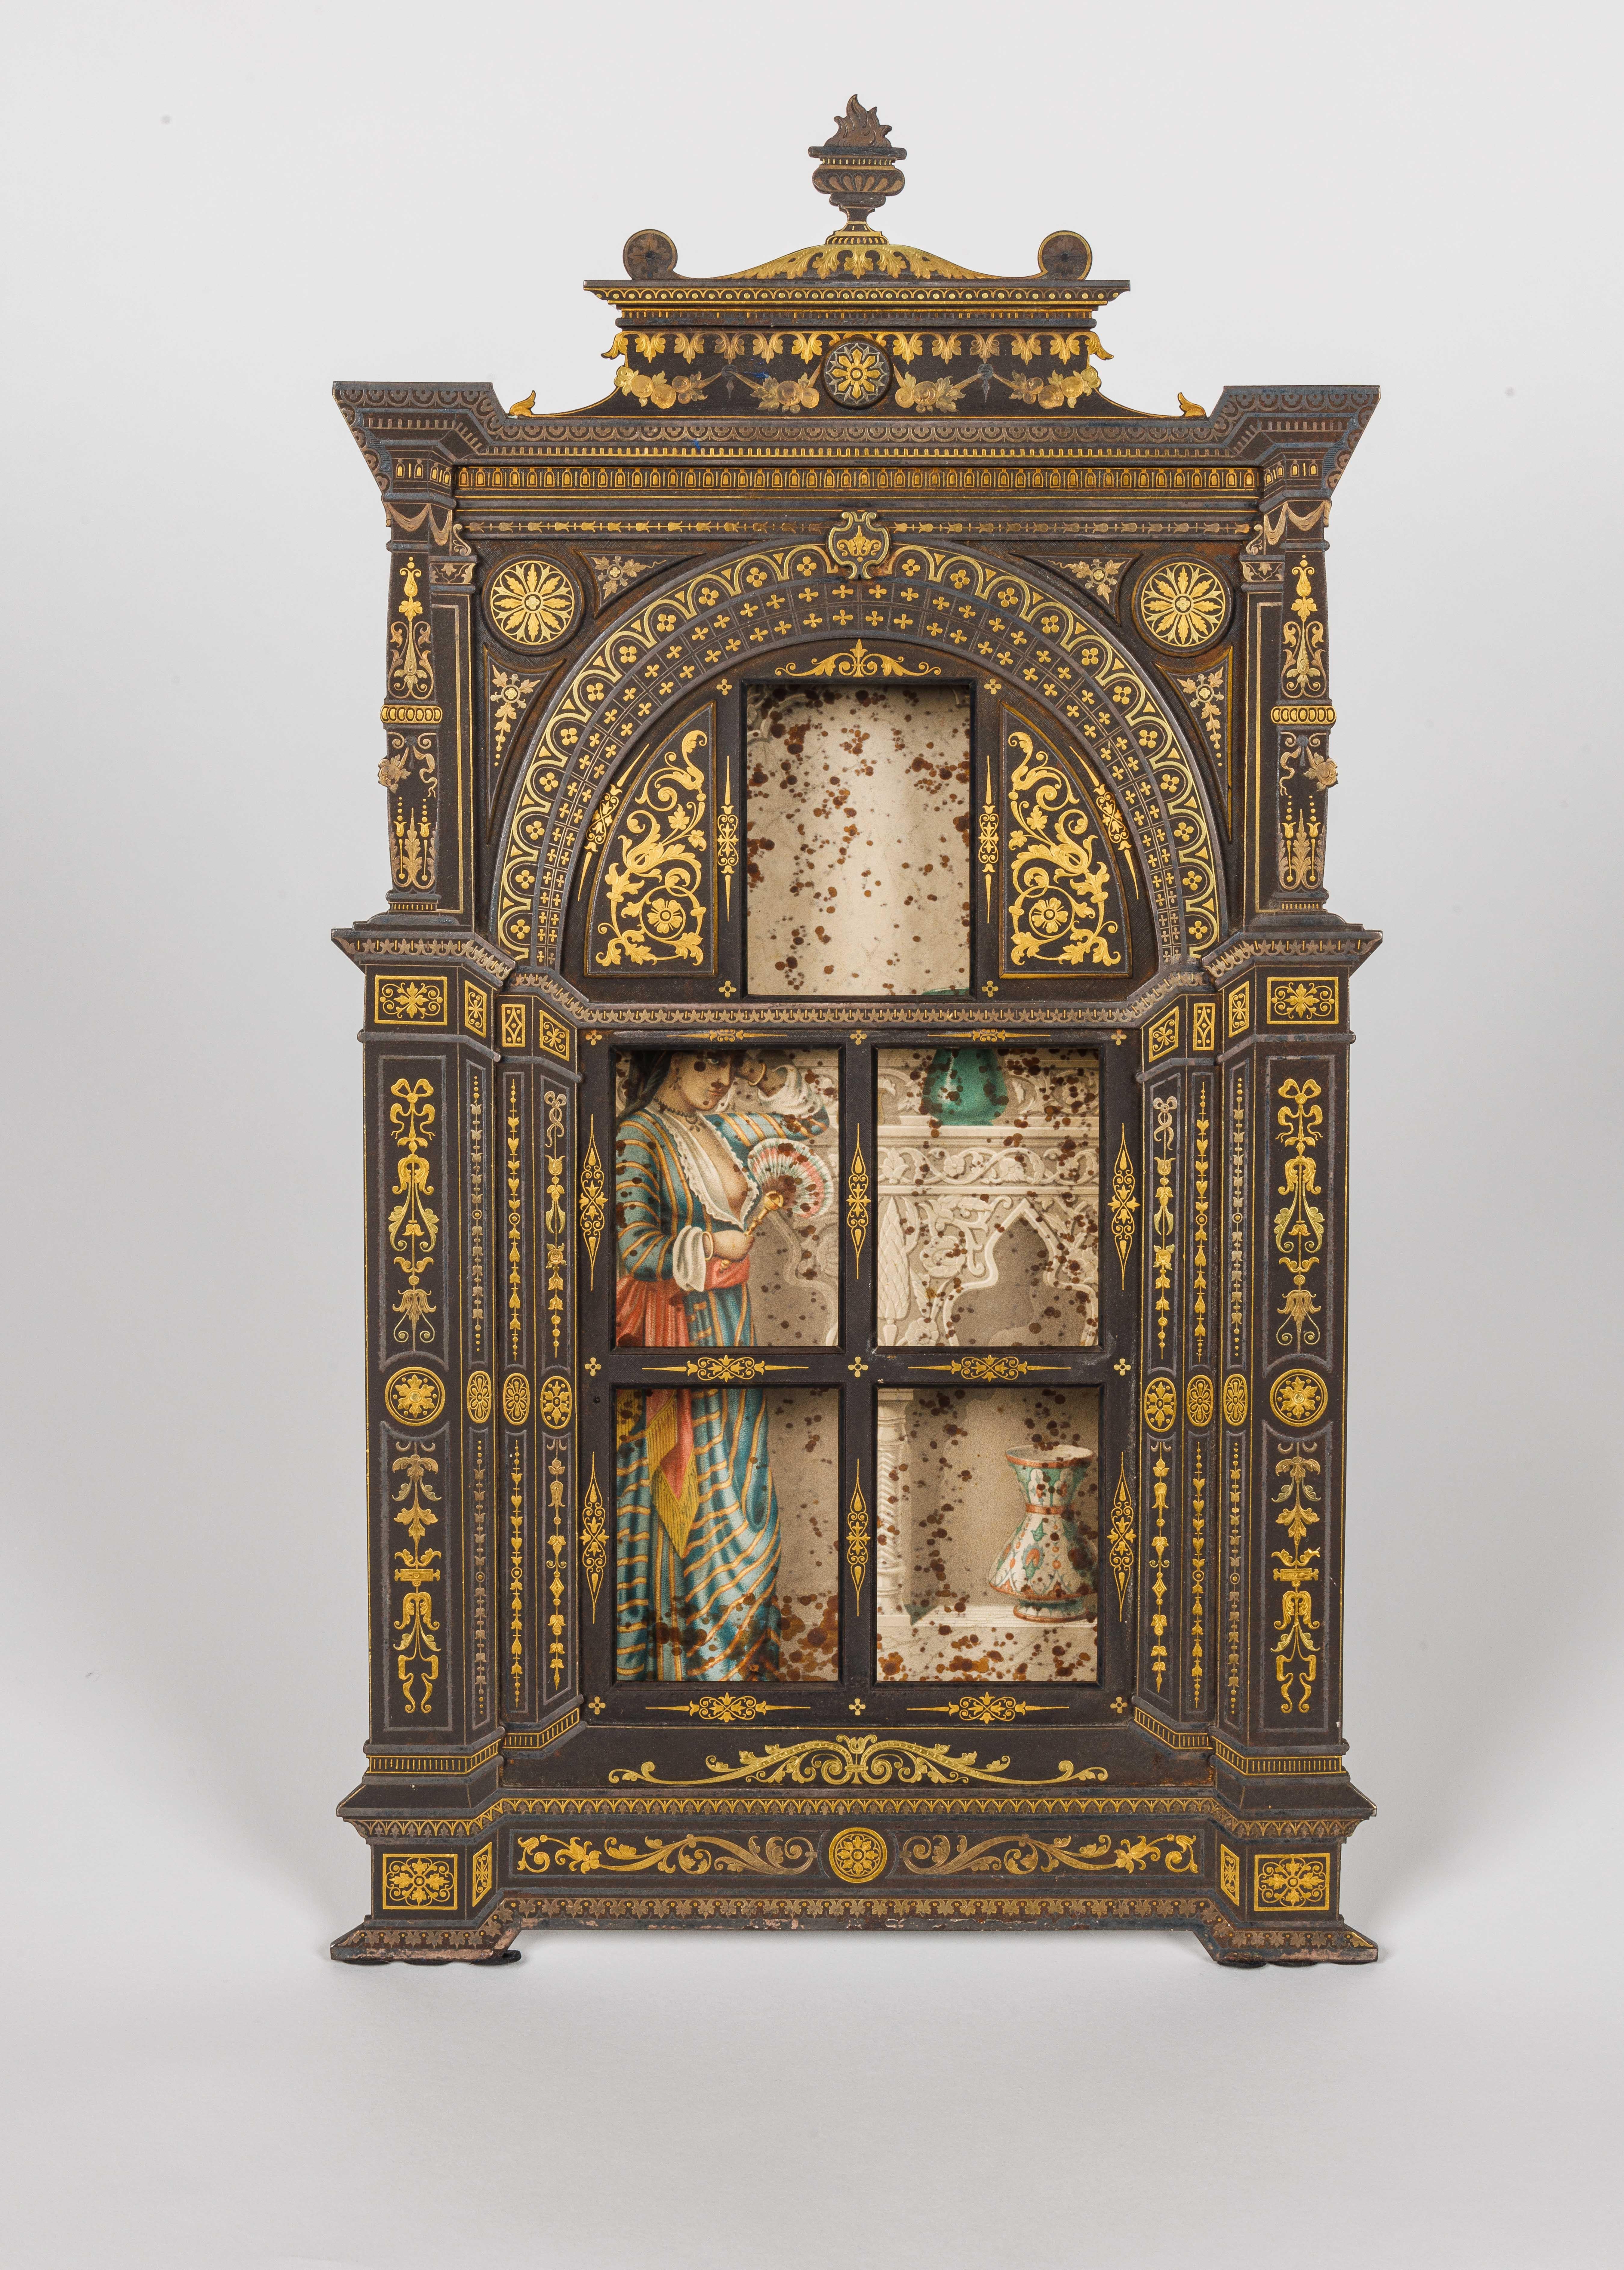 Placido Zuloaga, ein äußerst seltener spanischer Fensterrahmen aus Gold und Silber mit Damaszener, um 1880.

Der Innenraum ist ausgekleidet und mit einem orientalischen Kunstwerk ausgestattet. 

Rückseitig signiert PZ.

Placido Zuloaga war ein